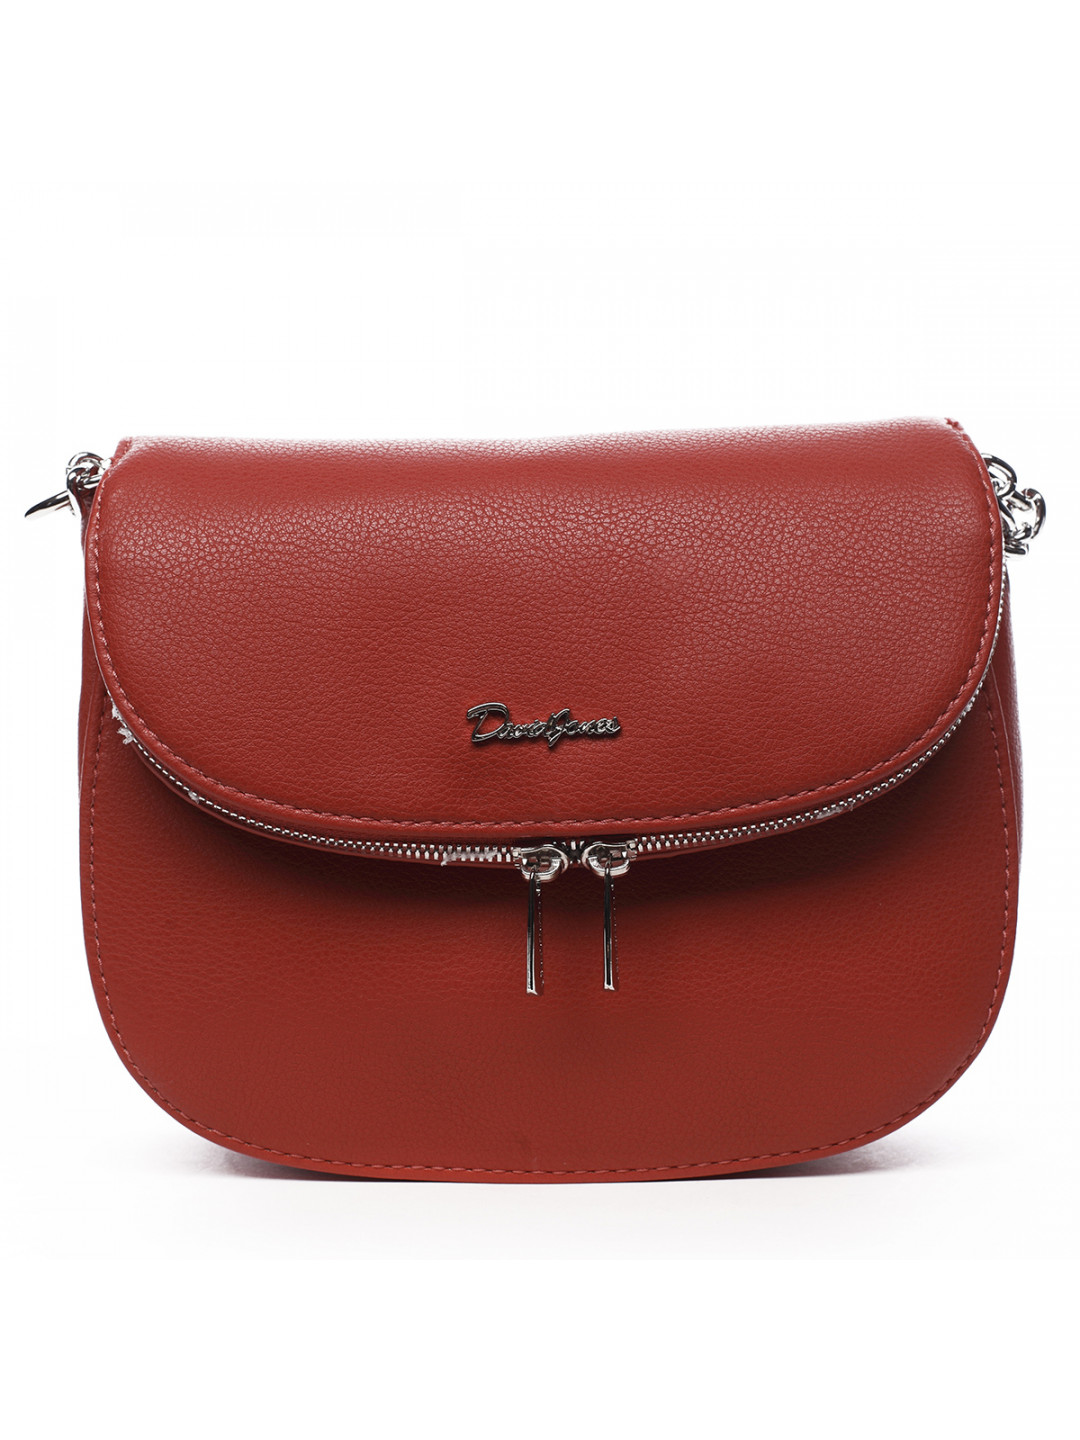 Luxusní kabelka přes rameno Celeste červená